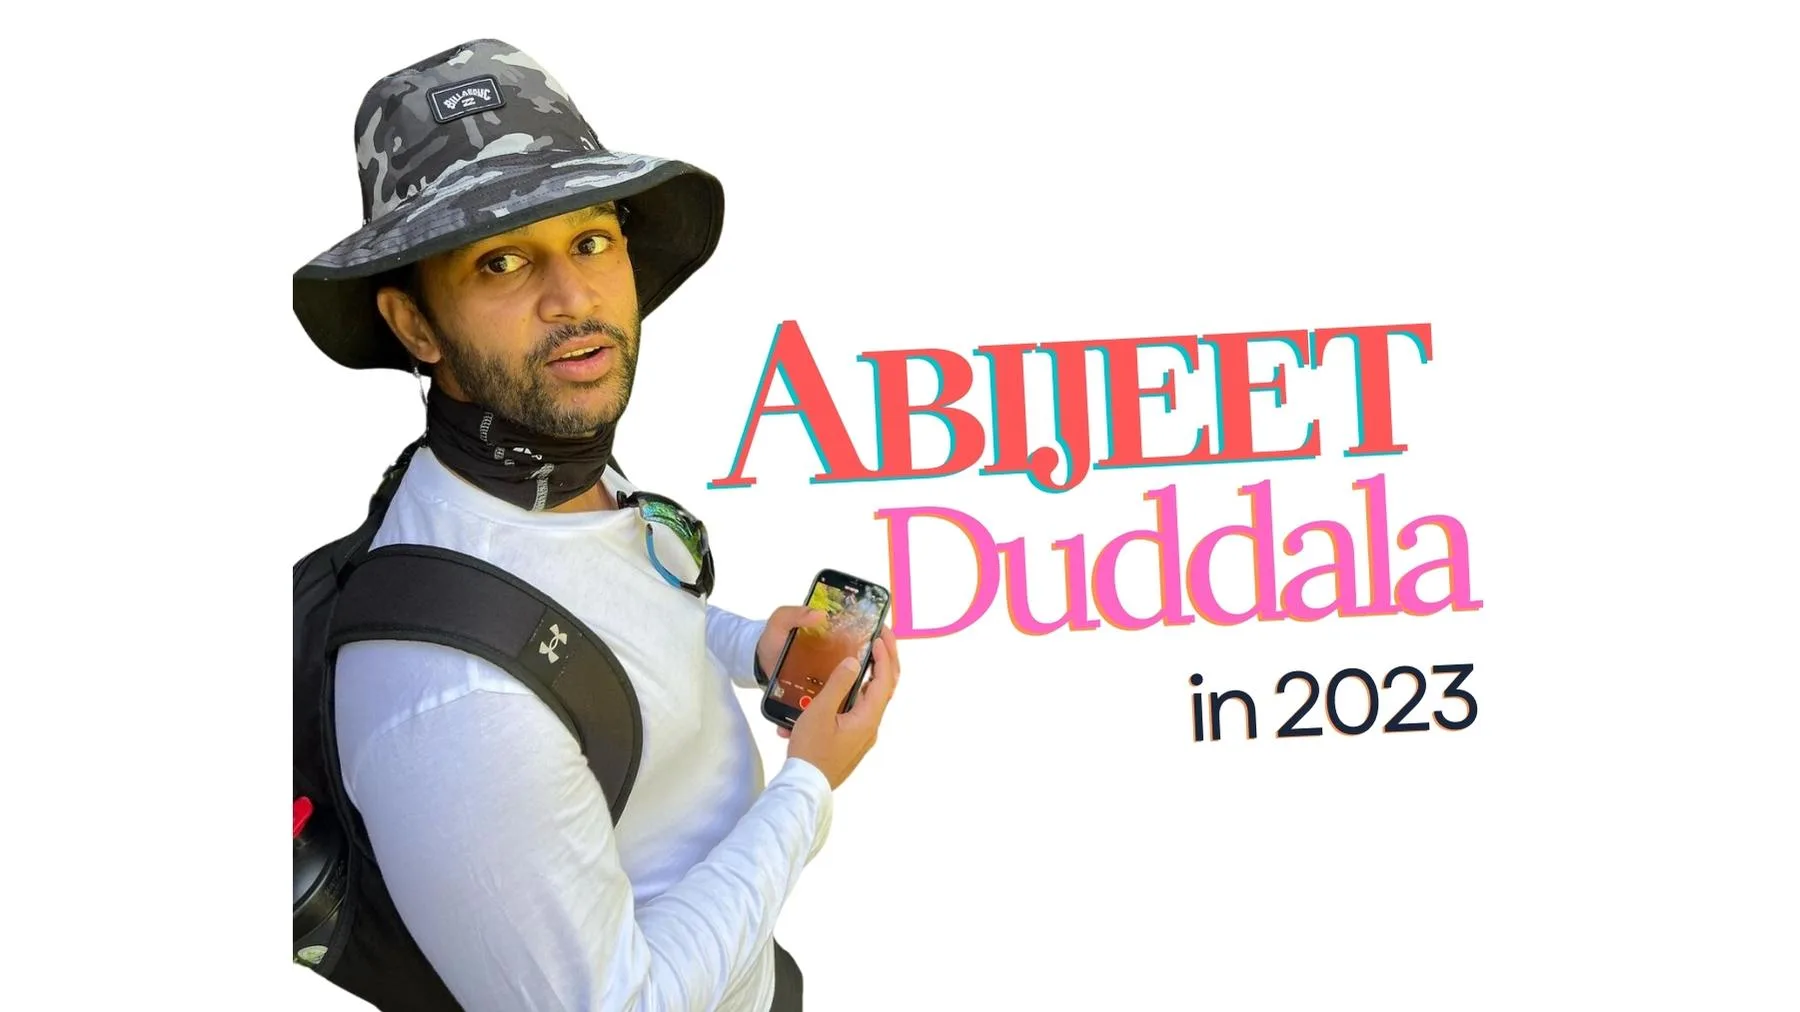 Abijeet Duddala net worth and family details